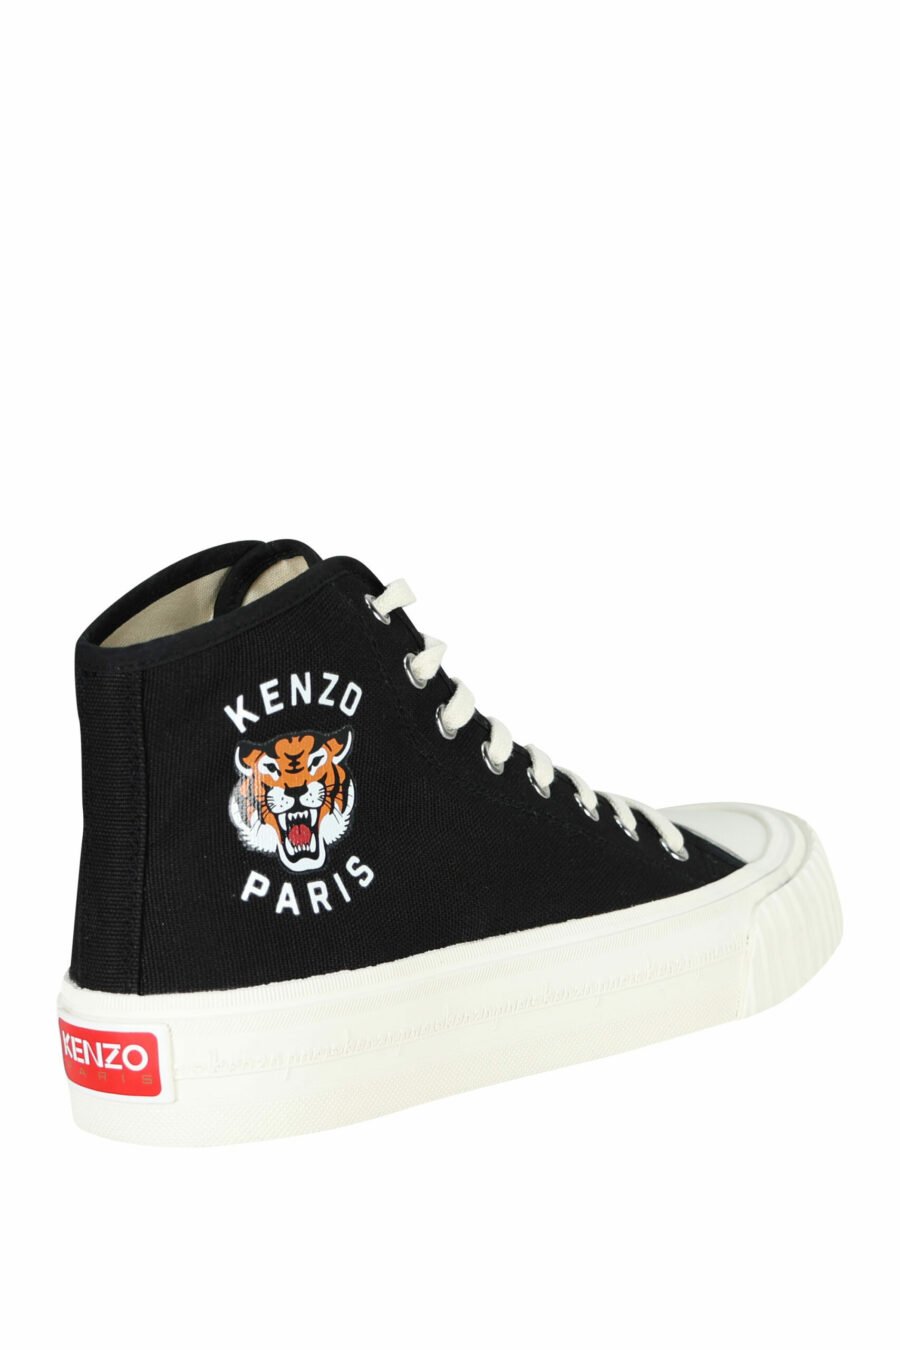 Zapatillas negras altas con logo "kenzo foxy" con logo tigre - 3612230649712 1 scaled